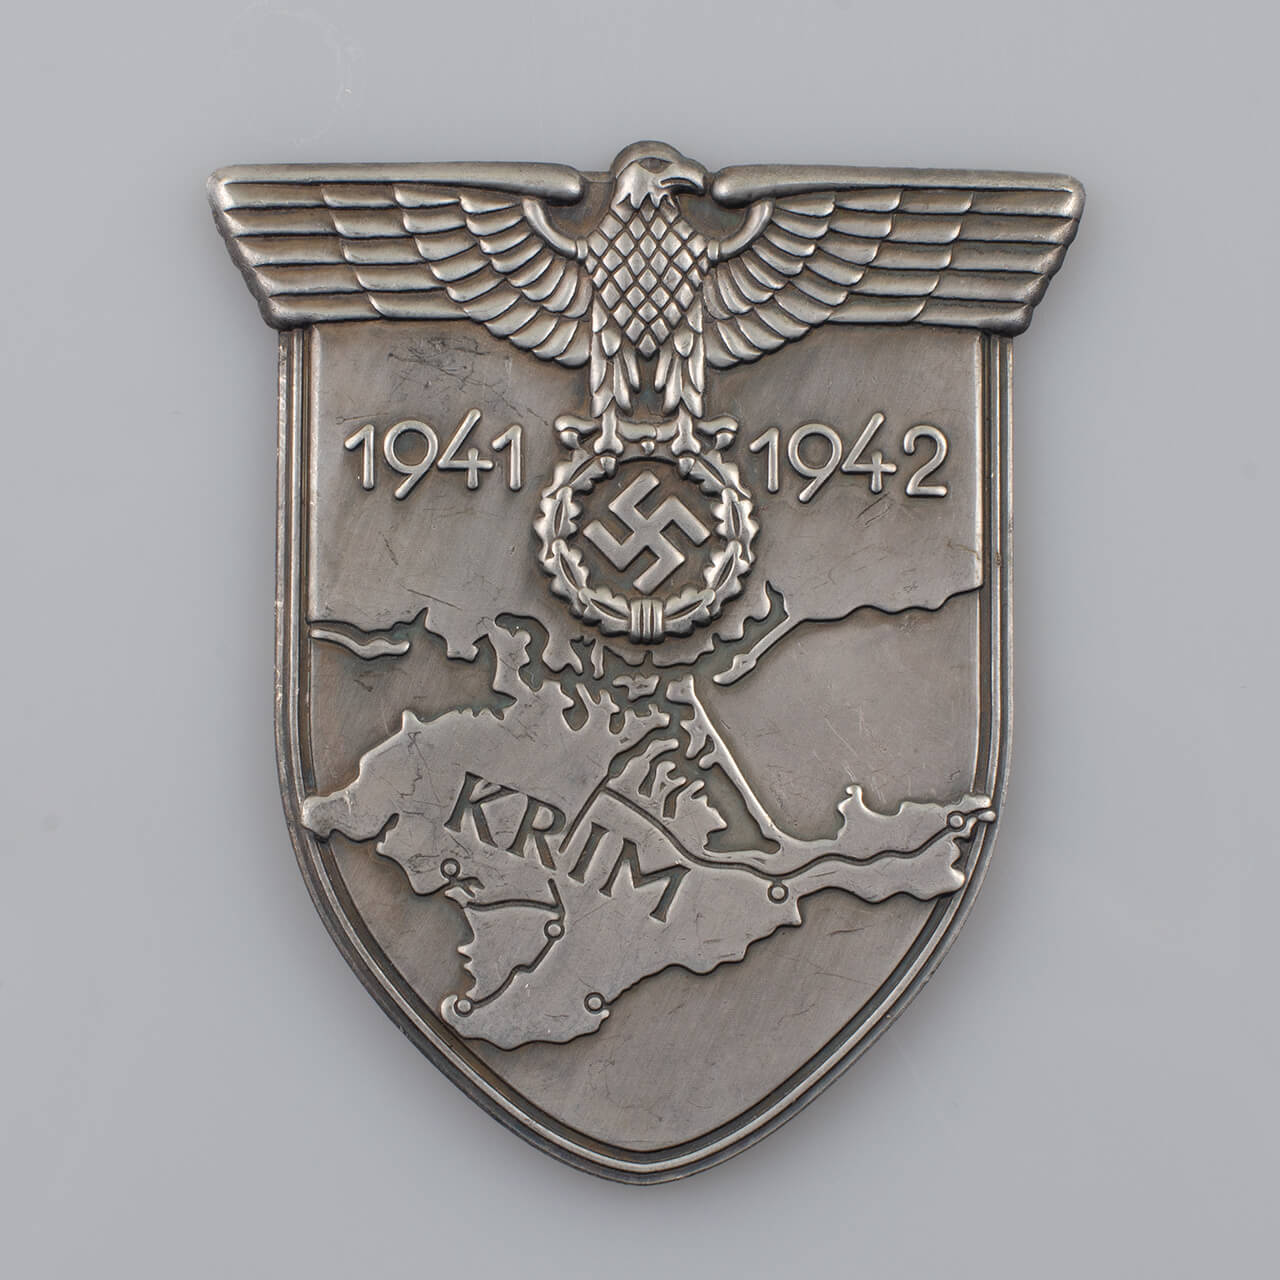 Tarcza naramienna KRIM (Krimschild) 1941-42 - III Rzesza